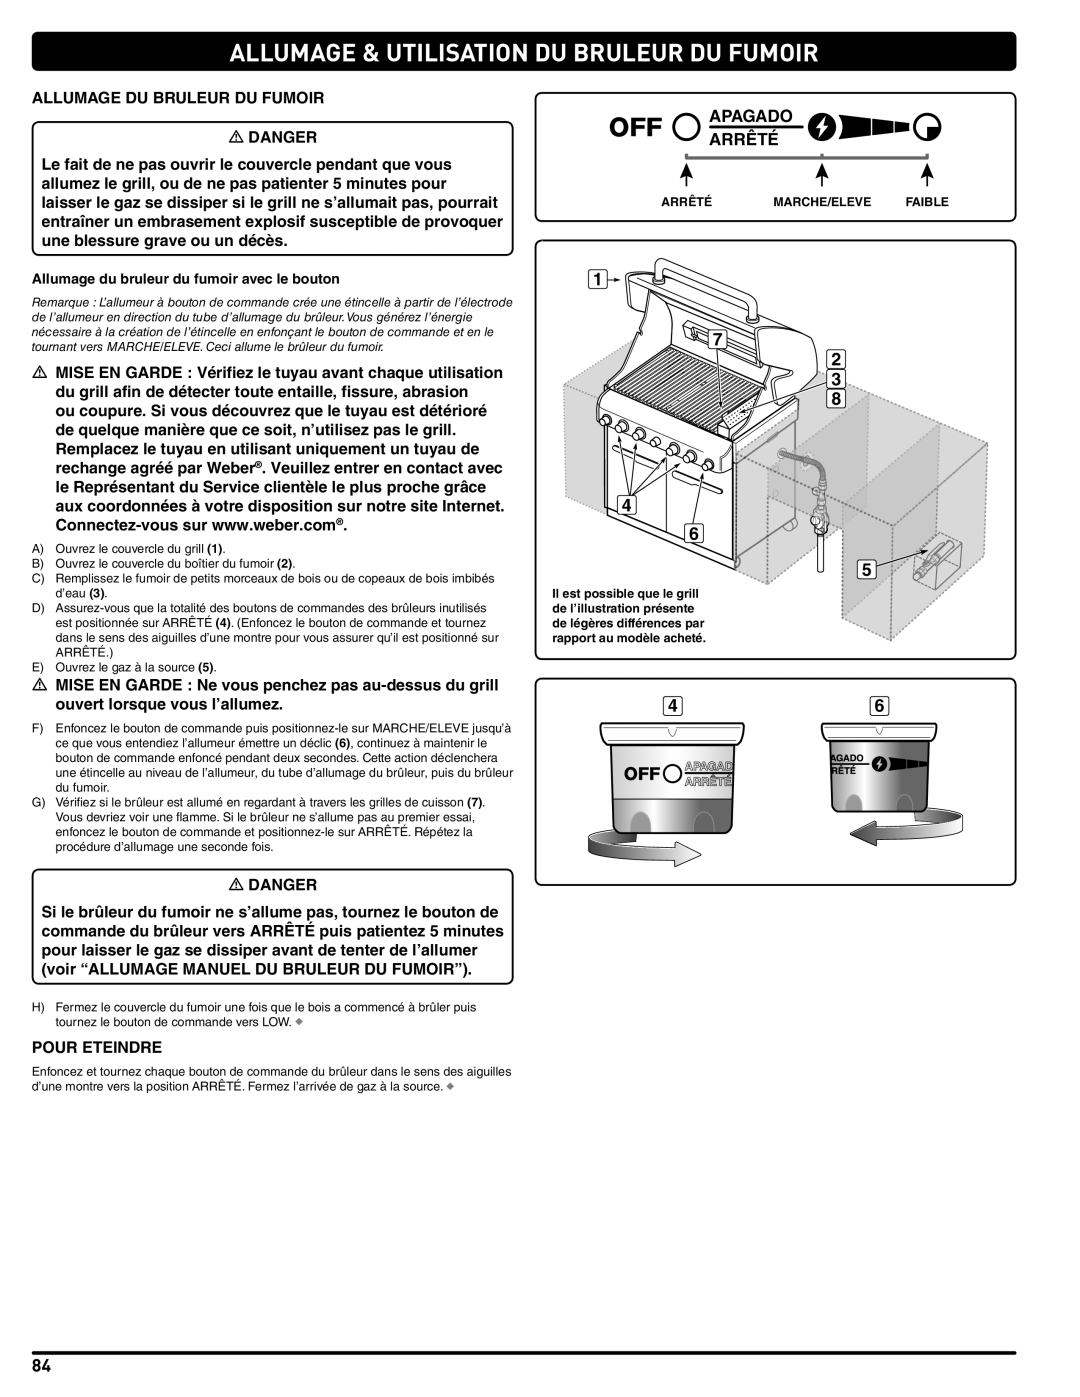 Weber 56576 manual Allumage & Utilisation Du Bruleur Du Fumoir, Apagado Arrêté, Marche/Eleve, Faible 